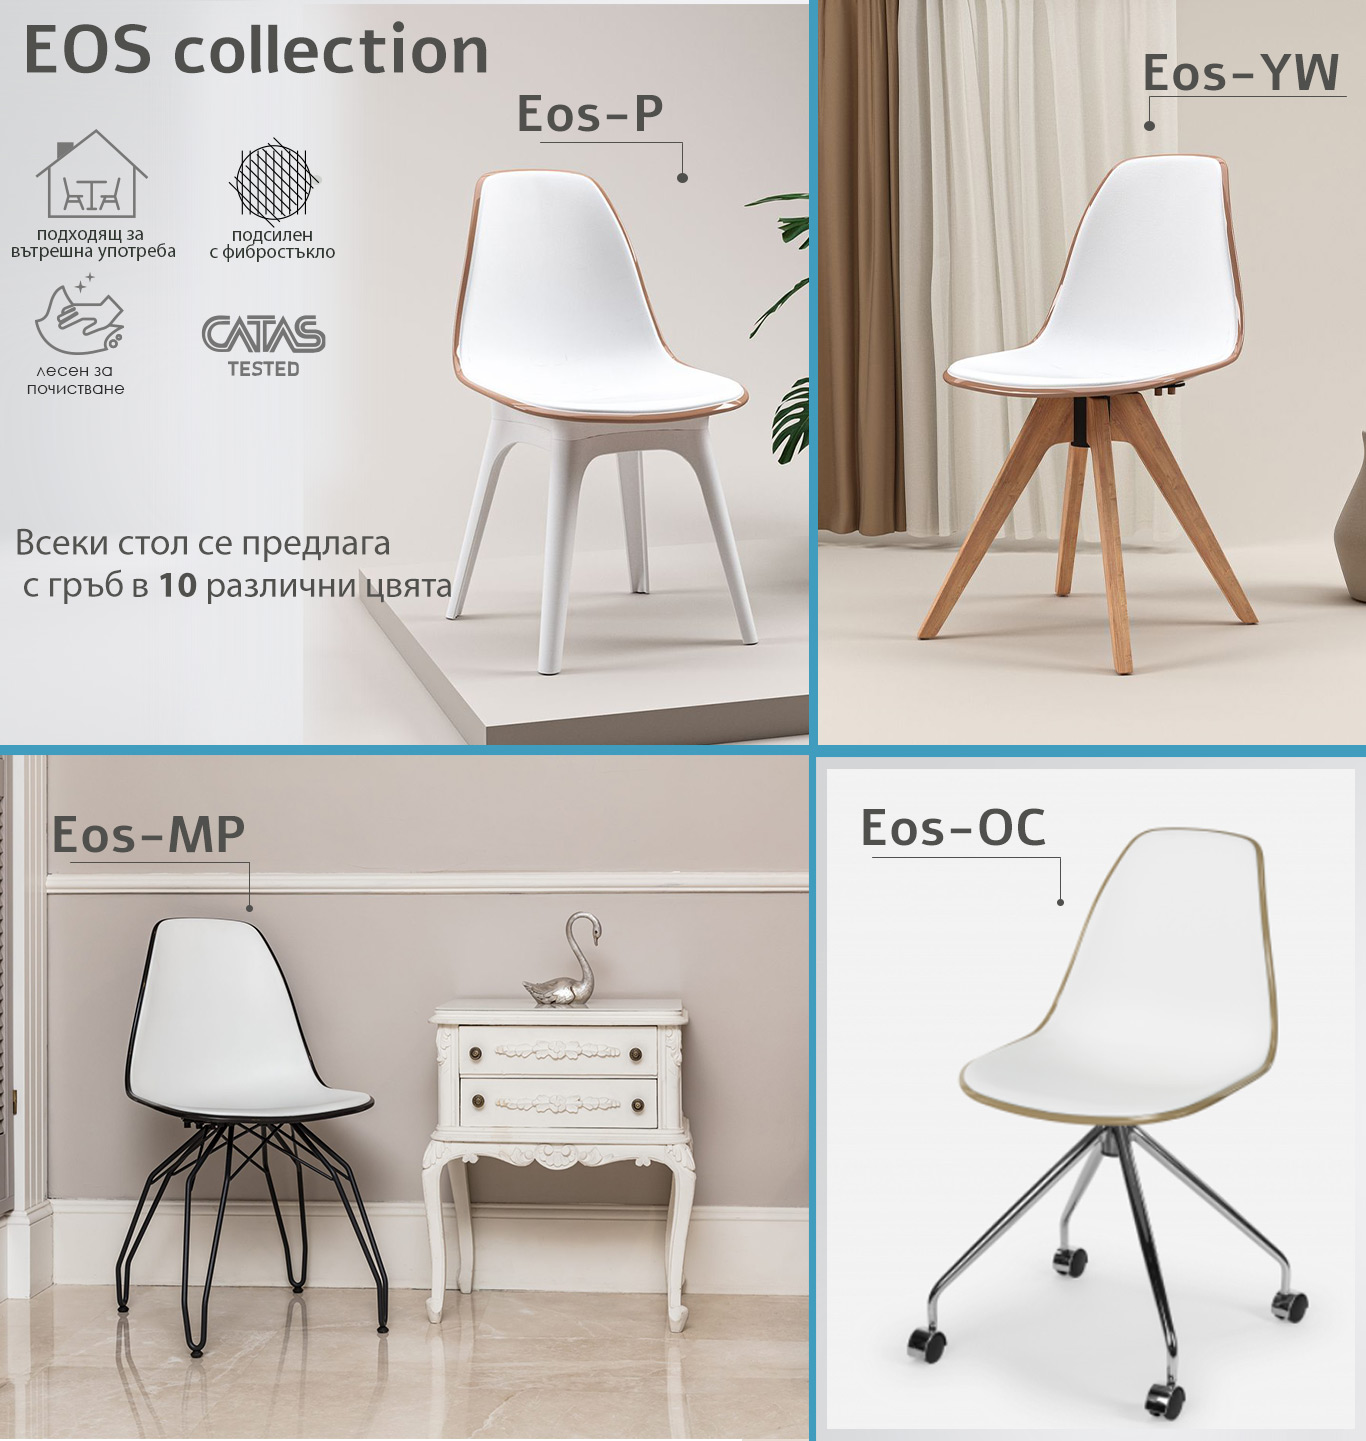 Eos collection